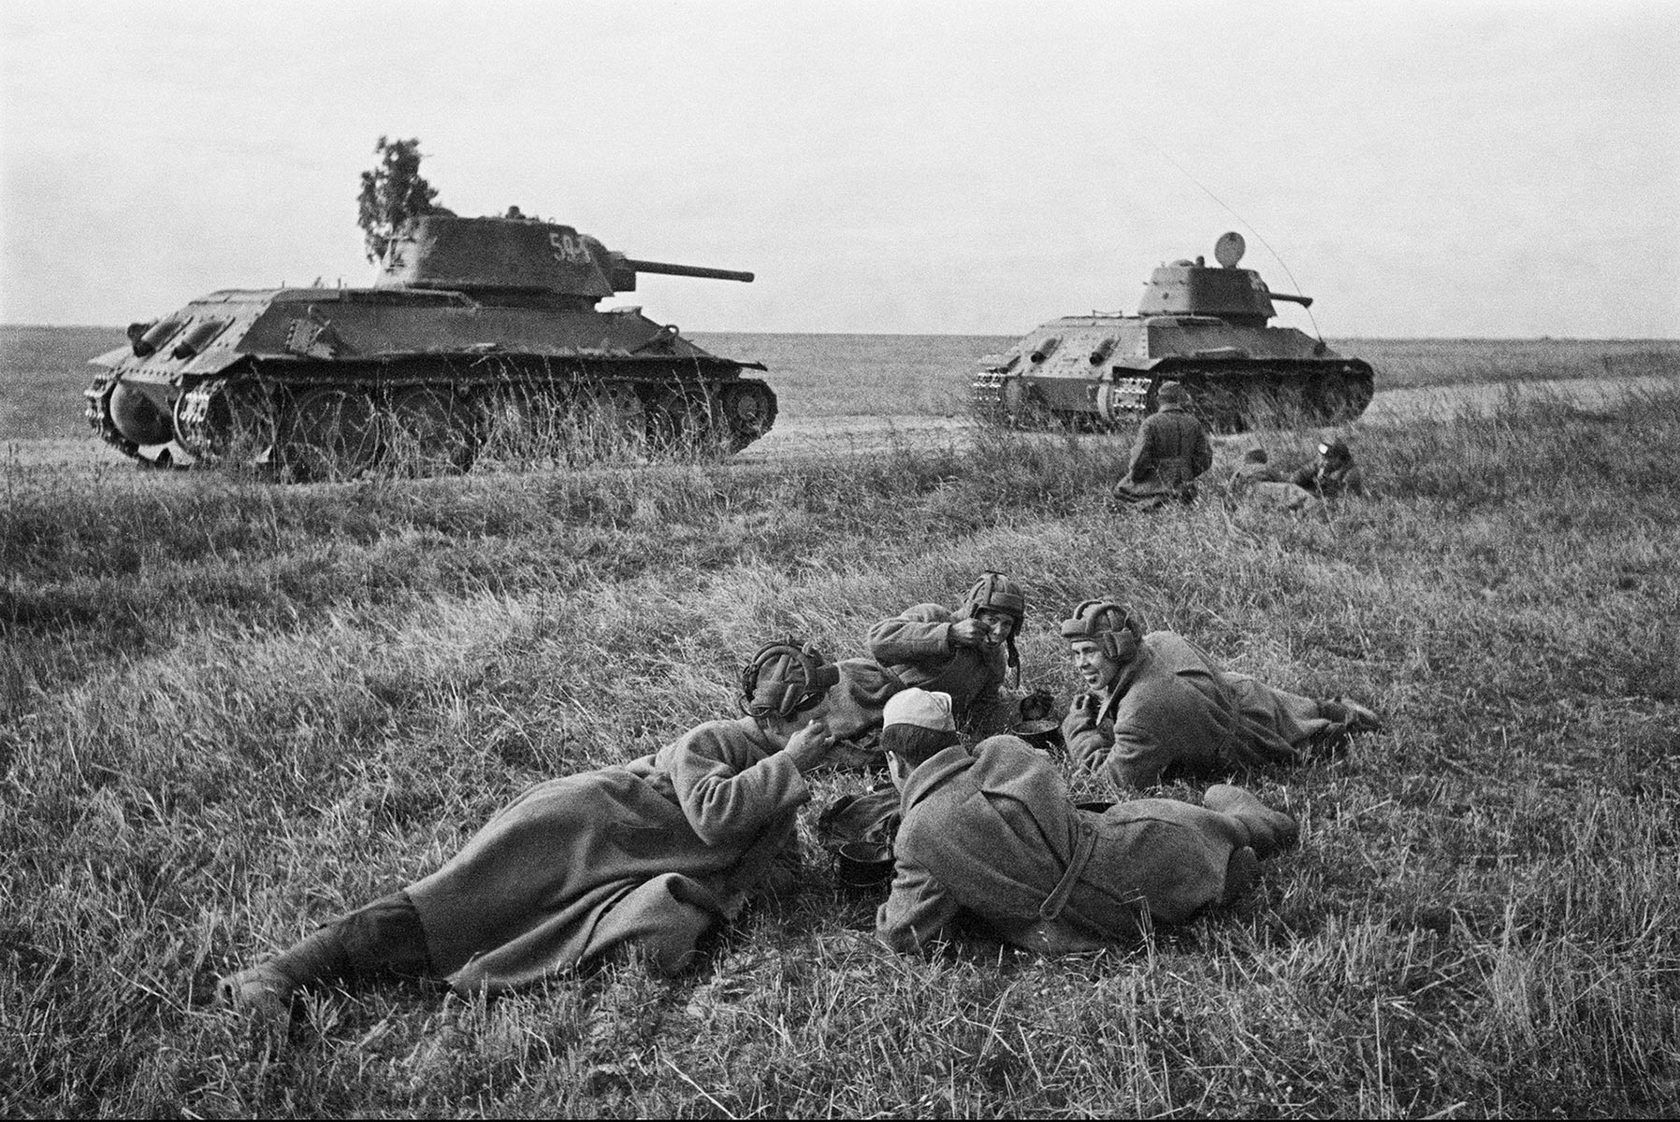 якобы 288-го отдельного танкового батальона 52-й гвардейской танковой бригады 6-го гвардейского корпуса 3-й гвардейской танковой армии 1-го Украинского фронта на последнем привале перед боями, под Киевом. 3.11.1943